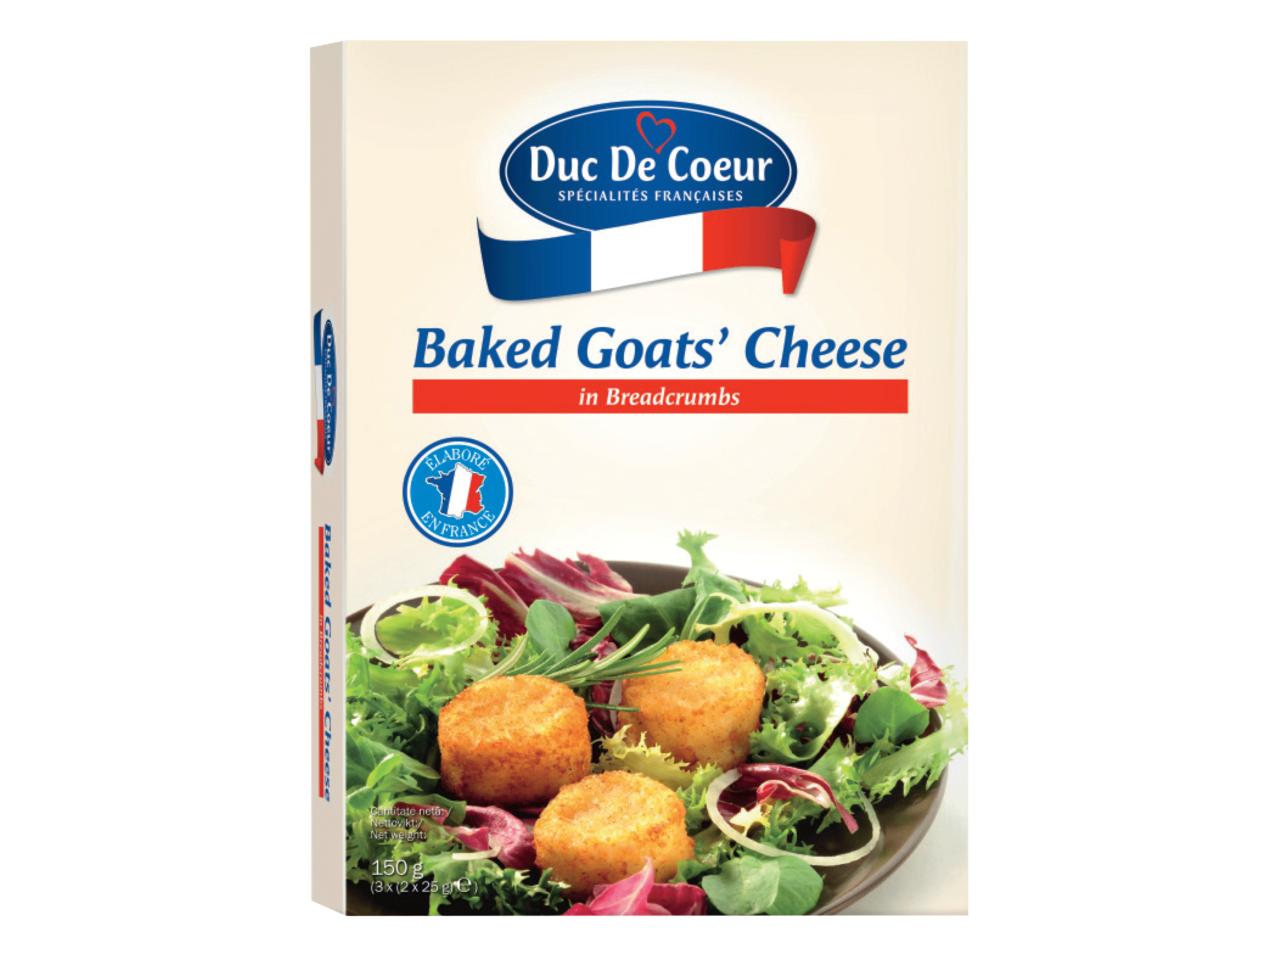 DUC DE COEUR Baked Goat's Cheese in Breadcrumbs